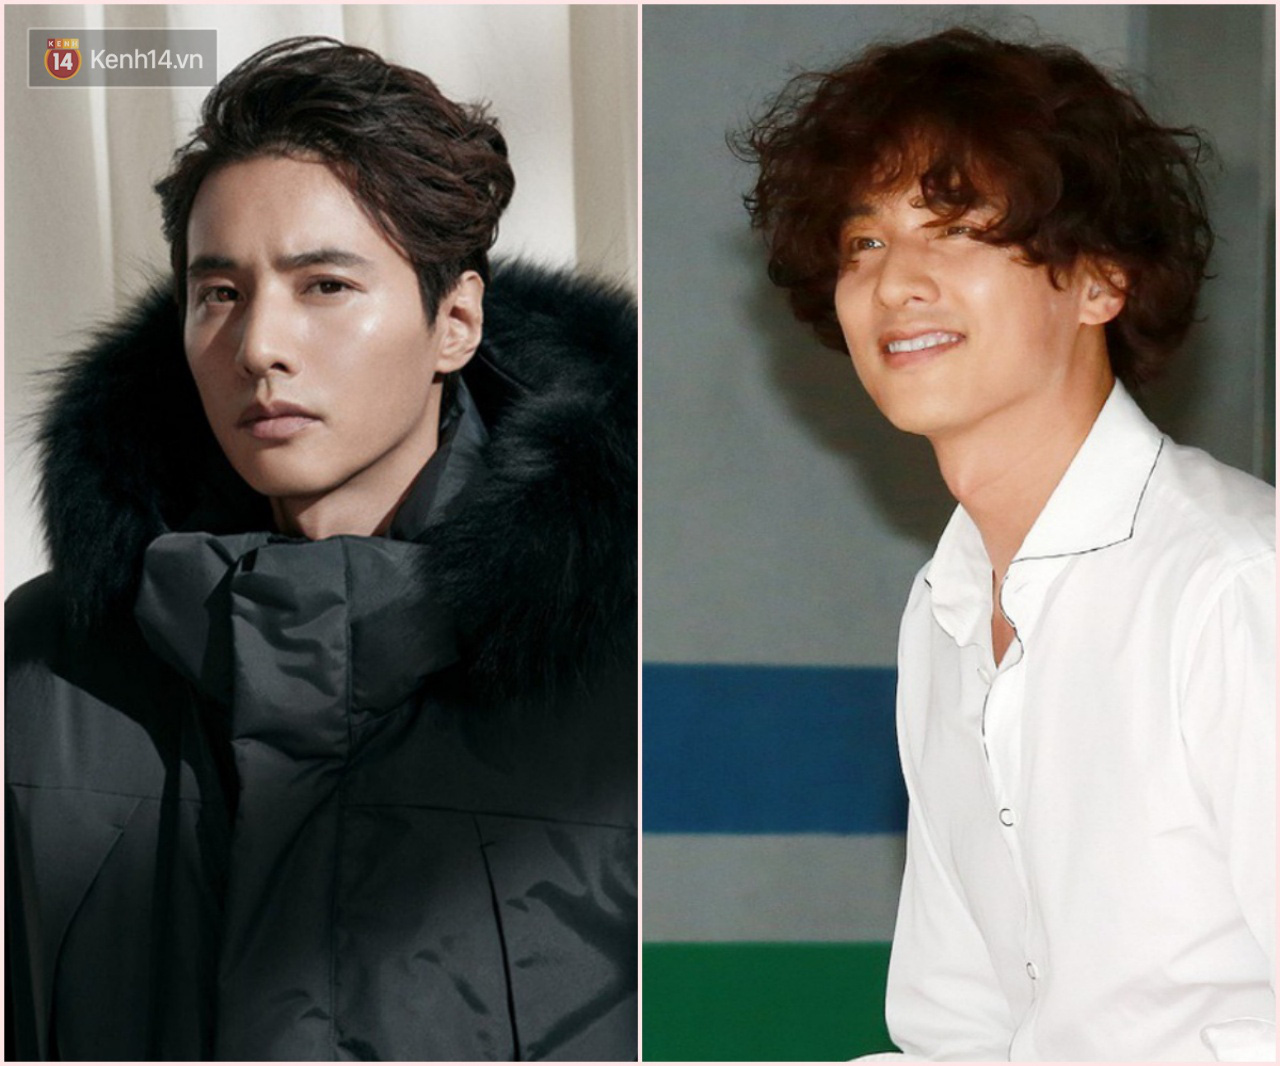 Loạt mỹ nam Hàn là minh chứng sống cho thấy đẹp trai đến đâu mà chọn sai kiểu tóc thì cũng toang vài phần - Ảnh 5.